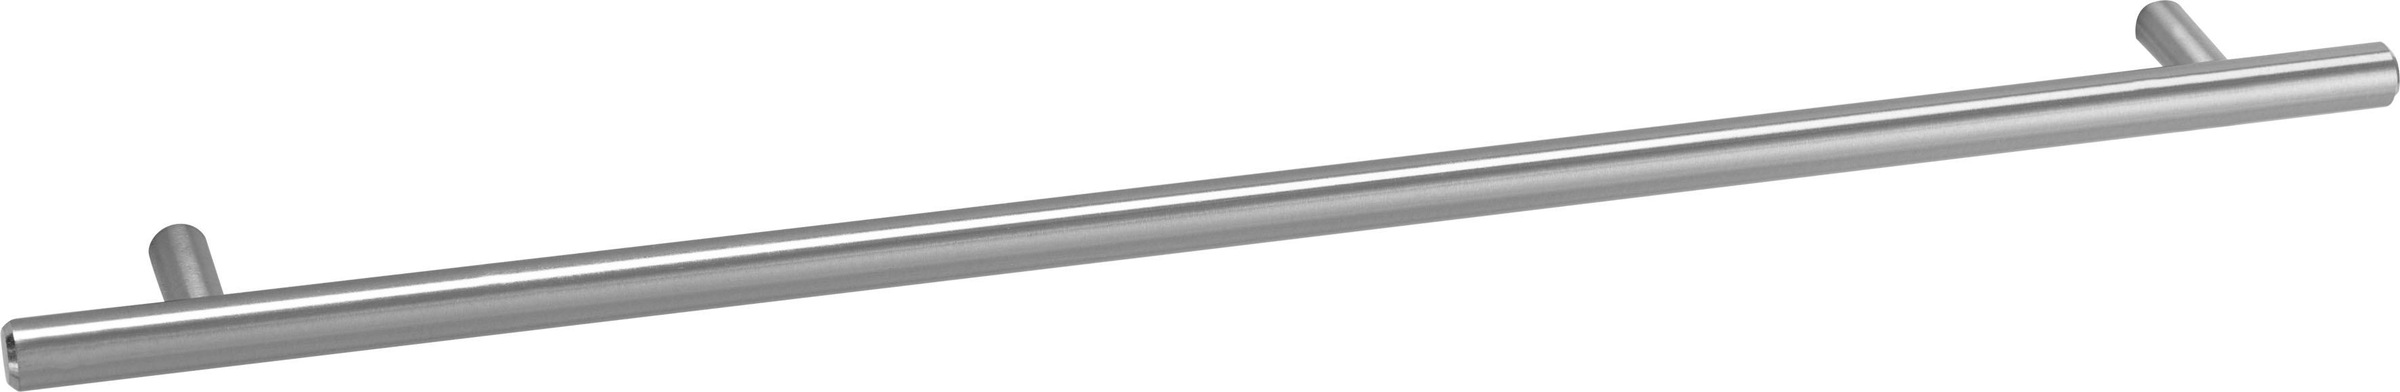 OPTIFIT Unterschrank »Bern«, 40 cm breit, mit 1 Tür mit höhenverstellbaren Füßen, mit Metallgriff